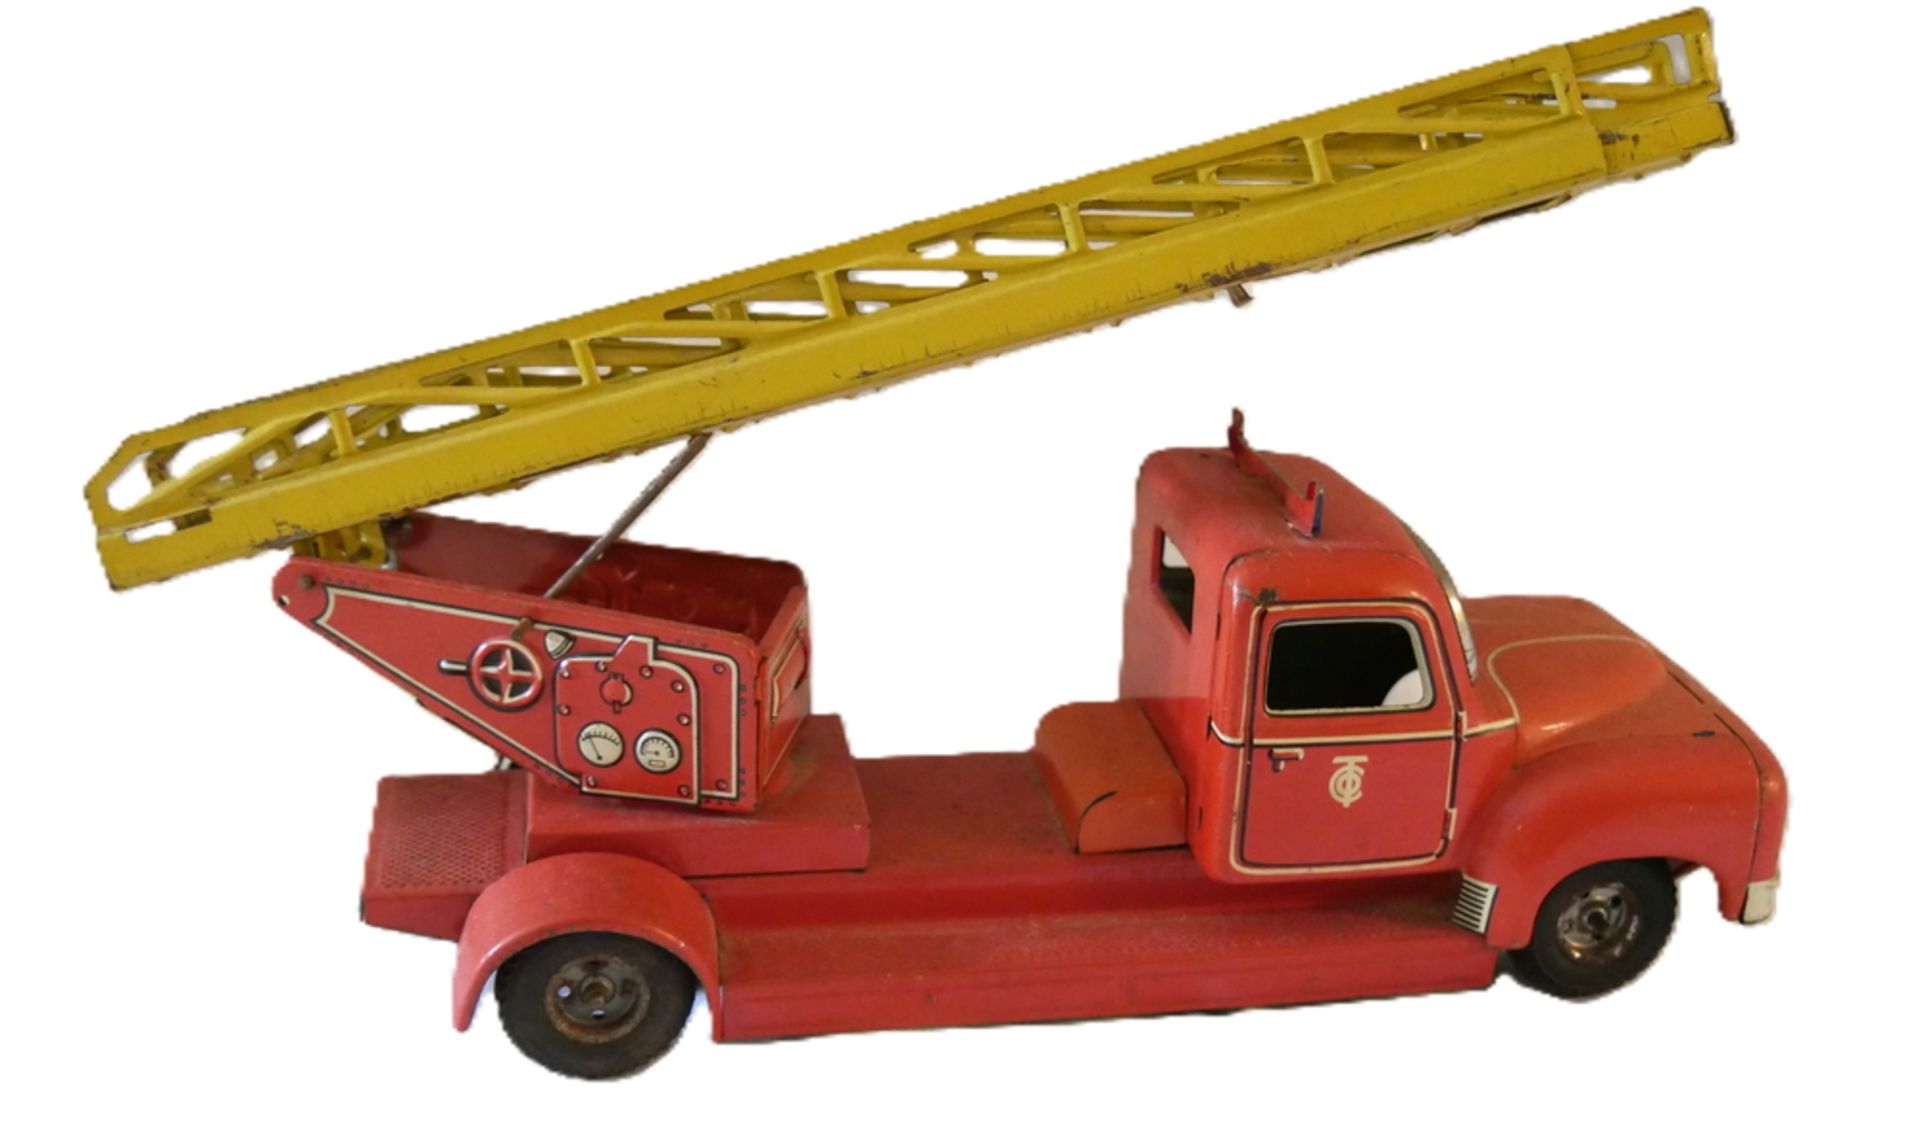 Tippco, Blechspielzeug, Feuerwehrauto, ca. 1950er Jahre. Nicht vollständig, bespielter Zustand. - Image 2 of 3